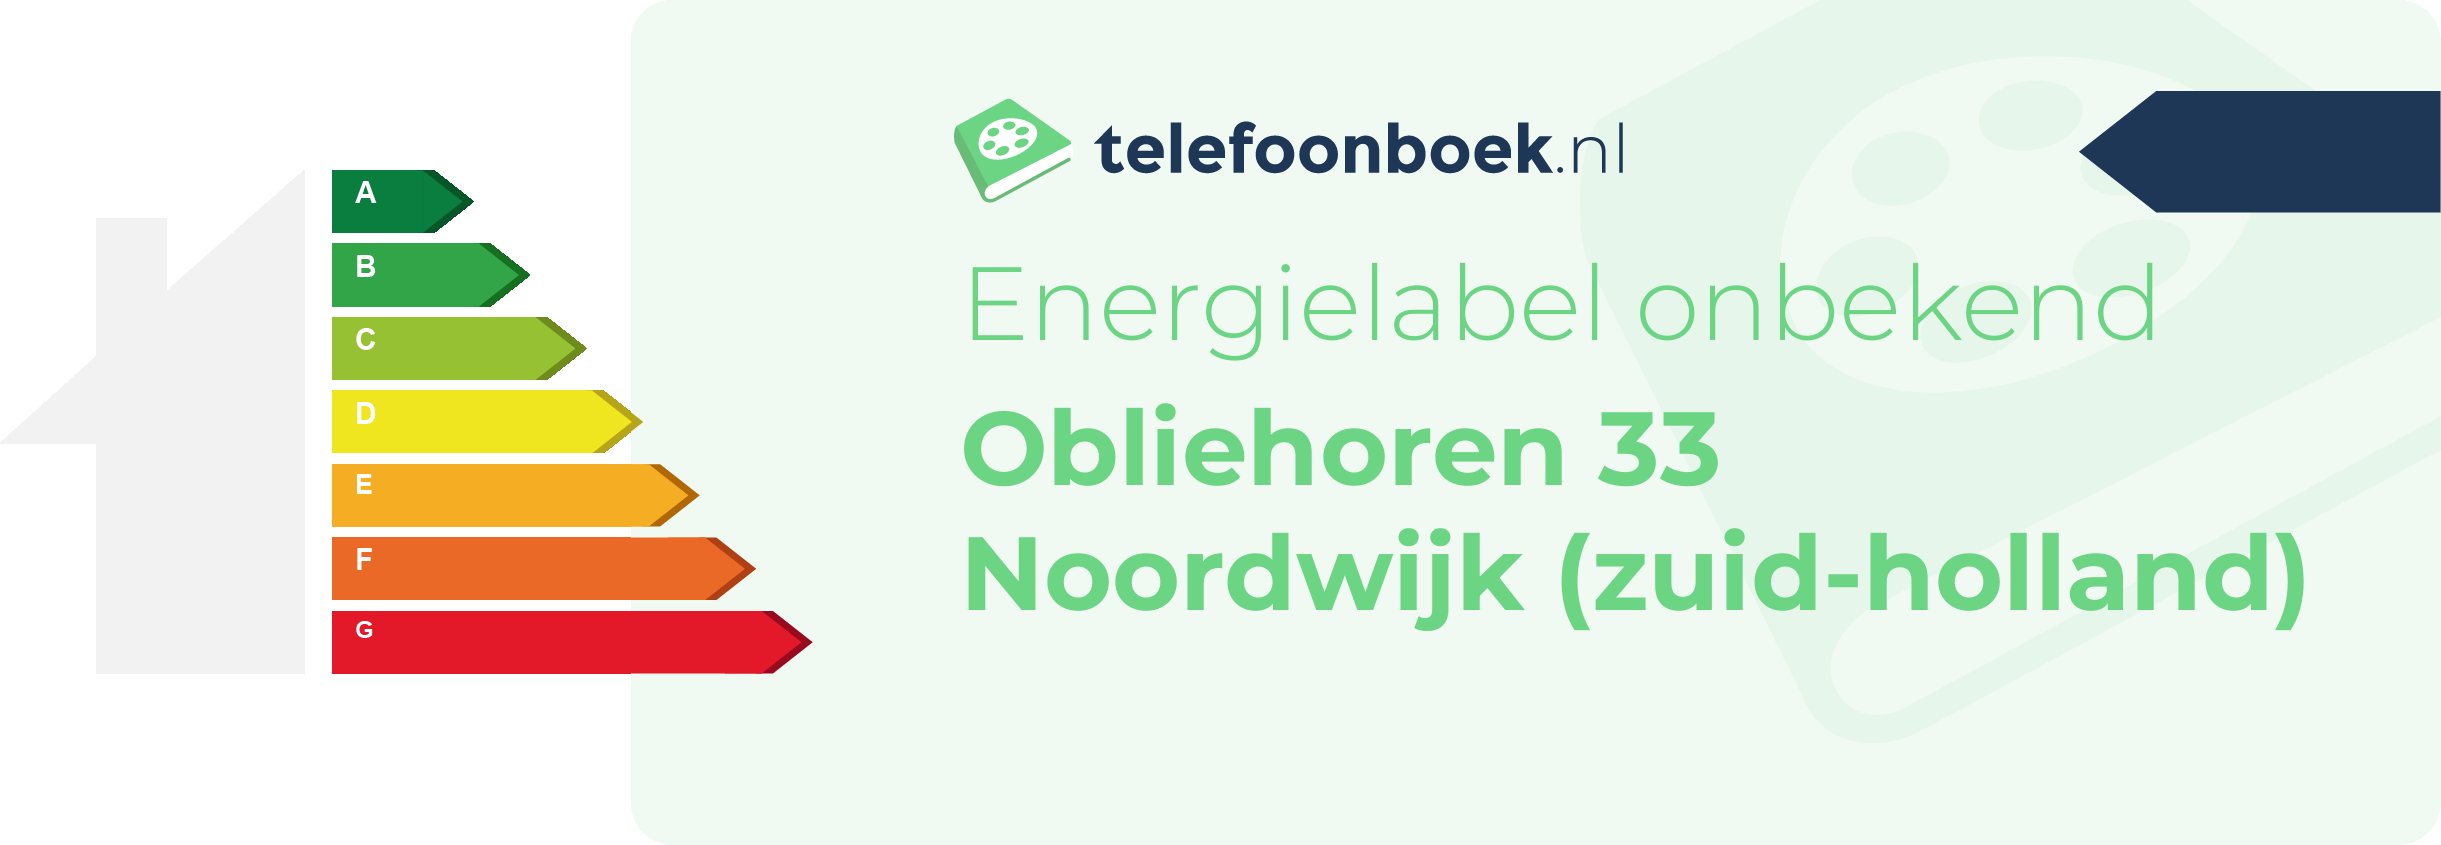 Energielabel Obliehoren 33 Noordwijk (Zuid-Holland)